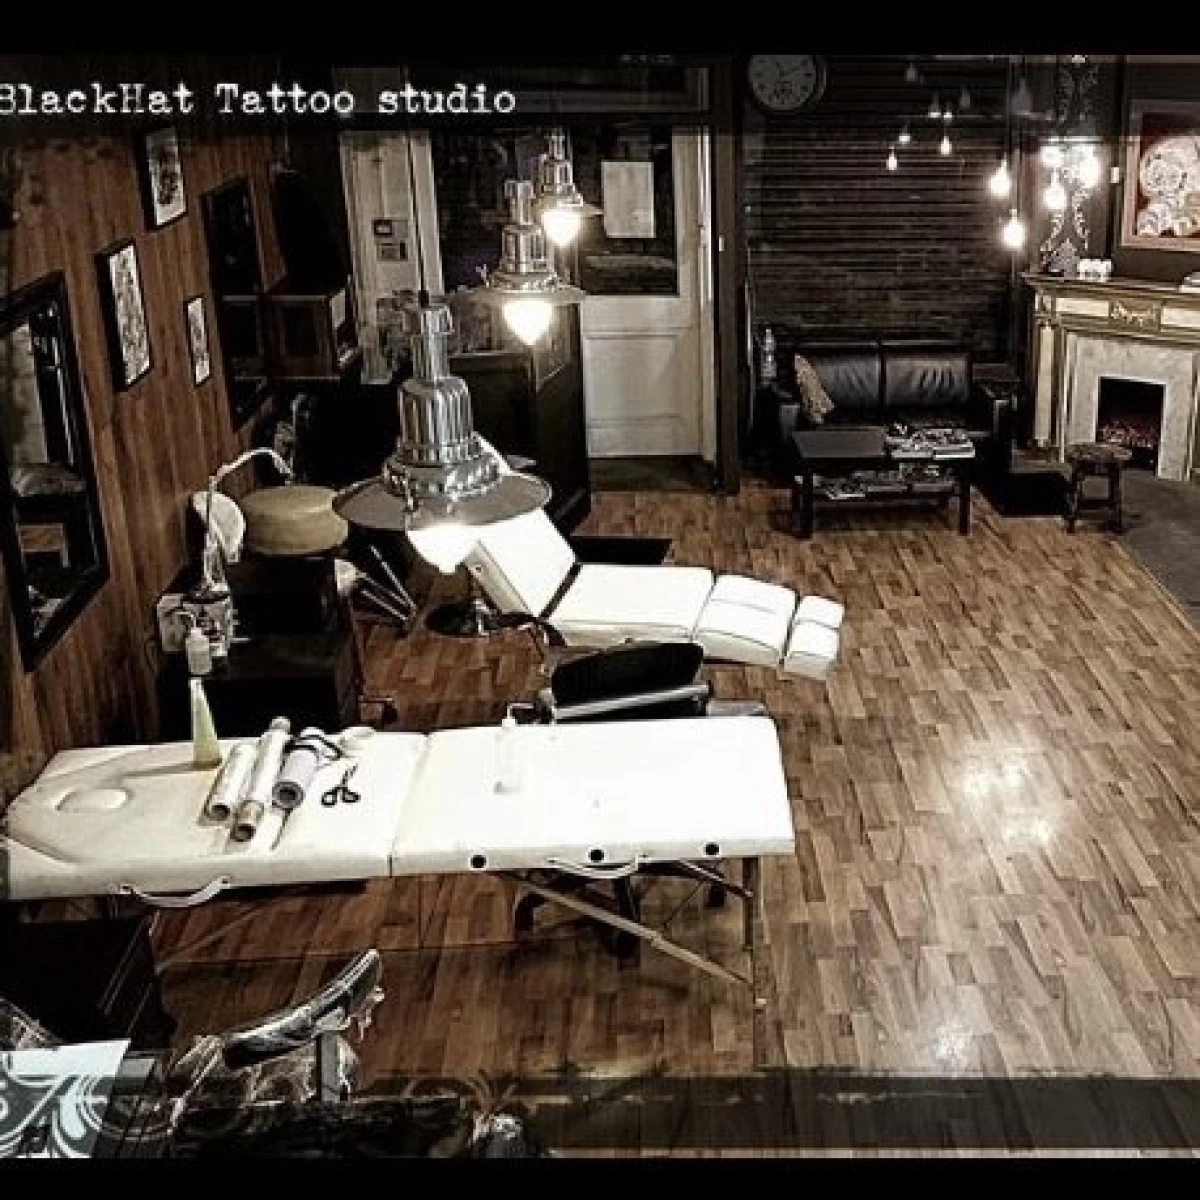 The-BlackHat-Tattoo-studio-Before-2018-e1596445131391